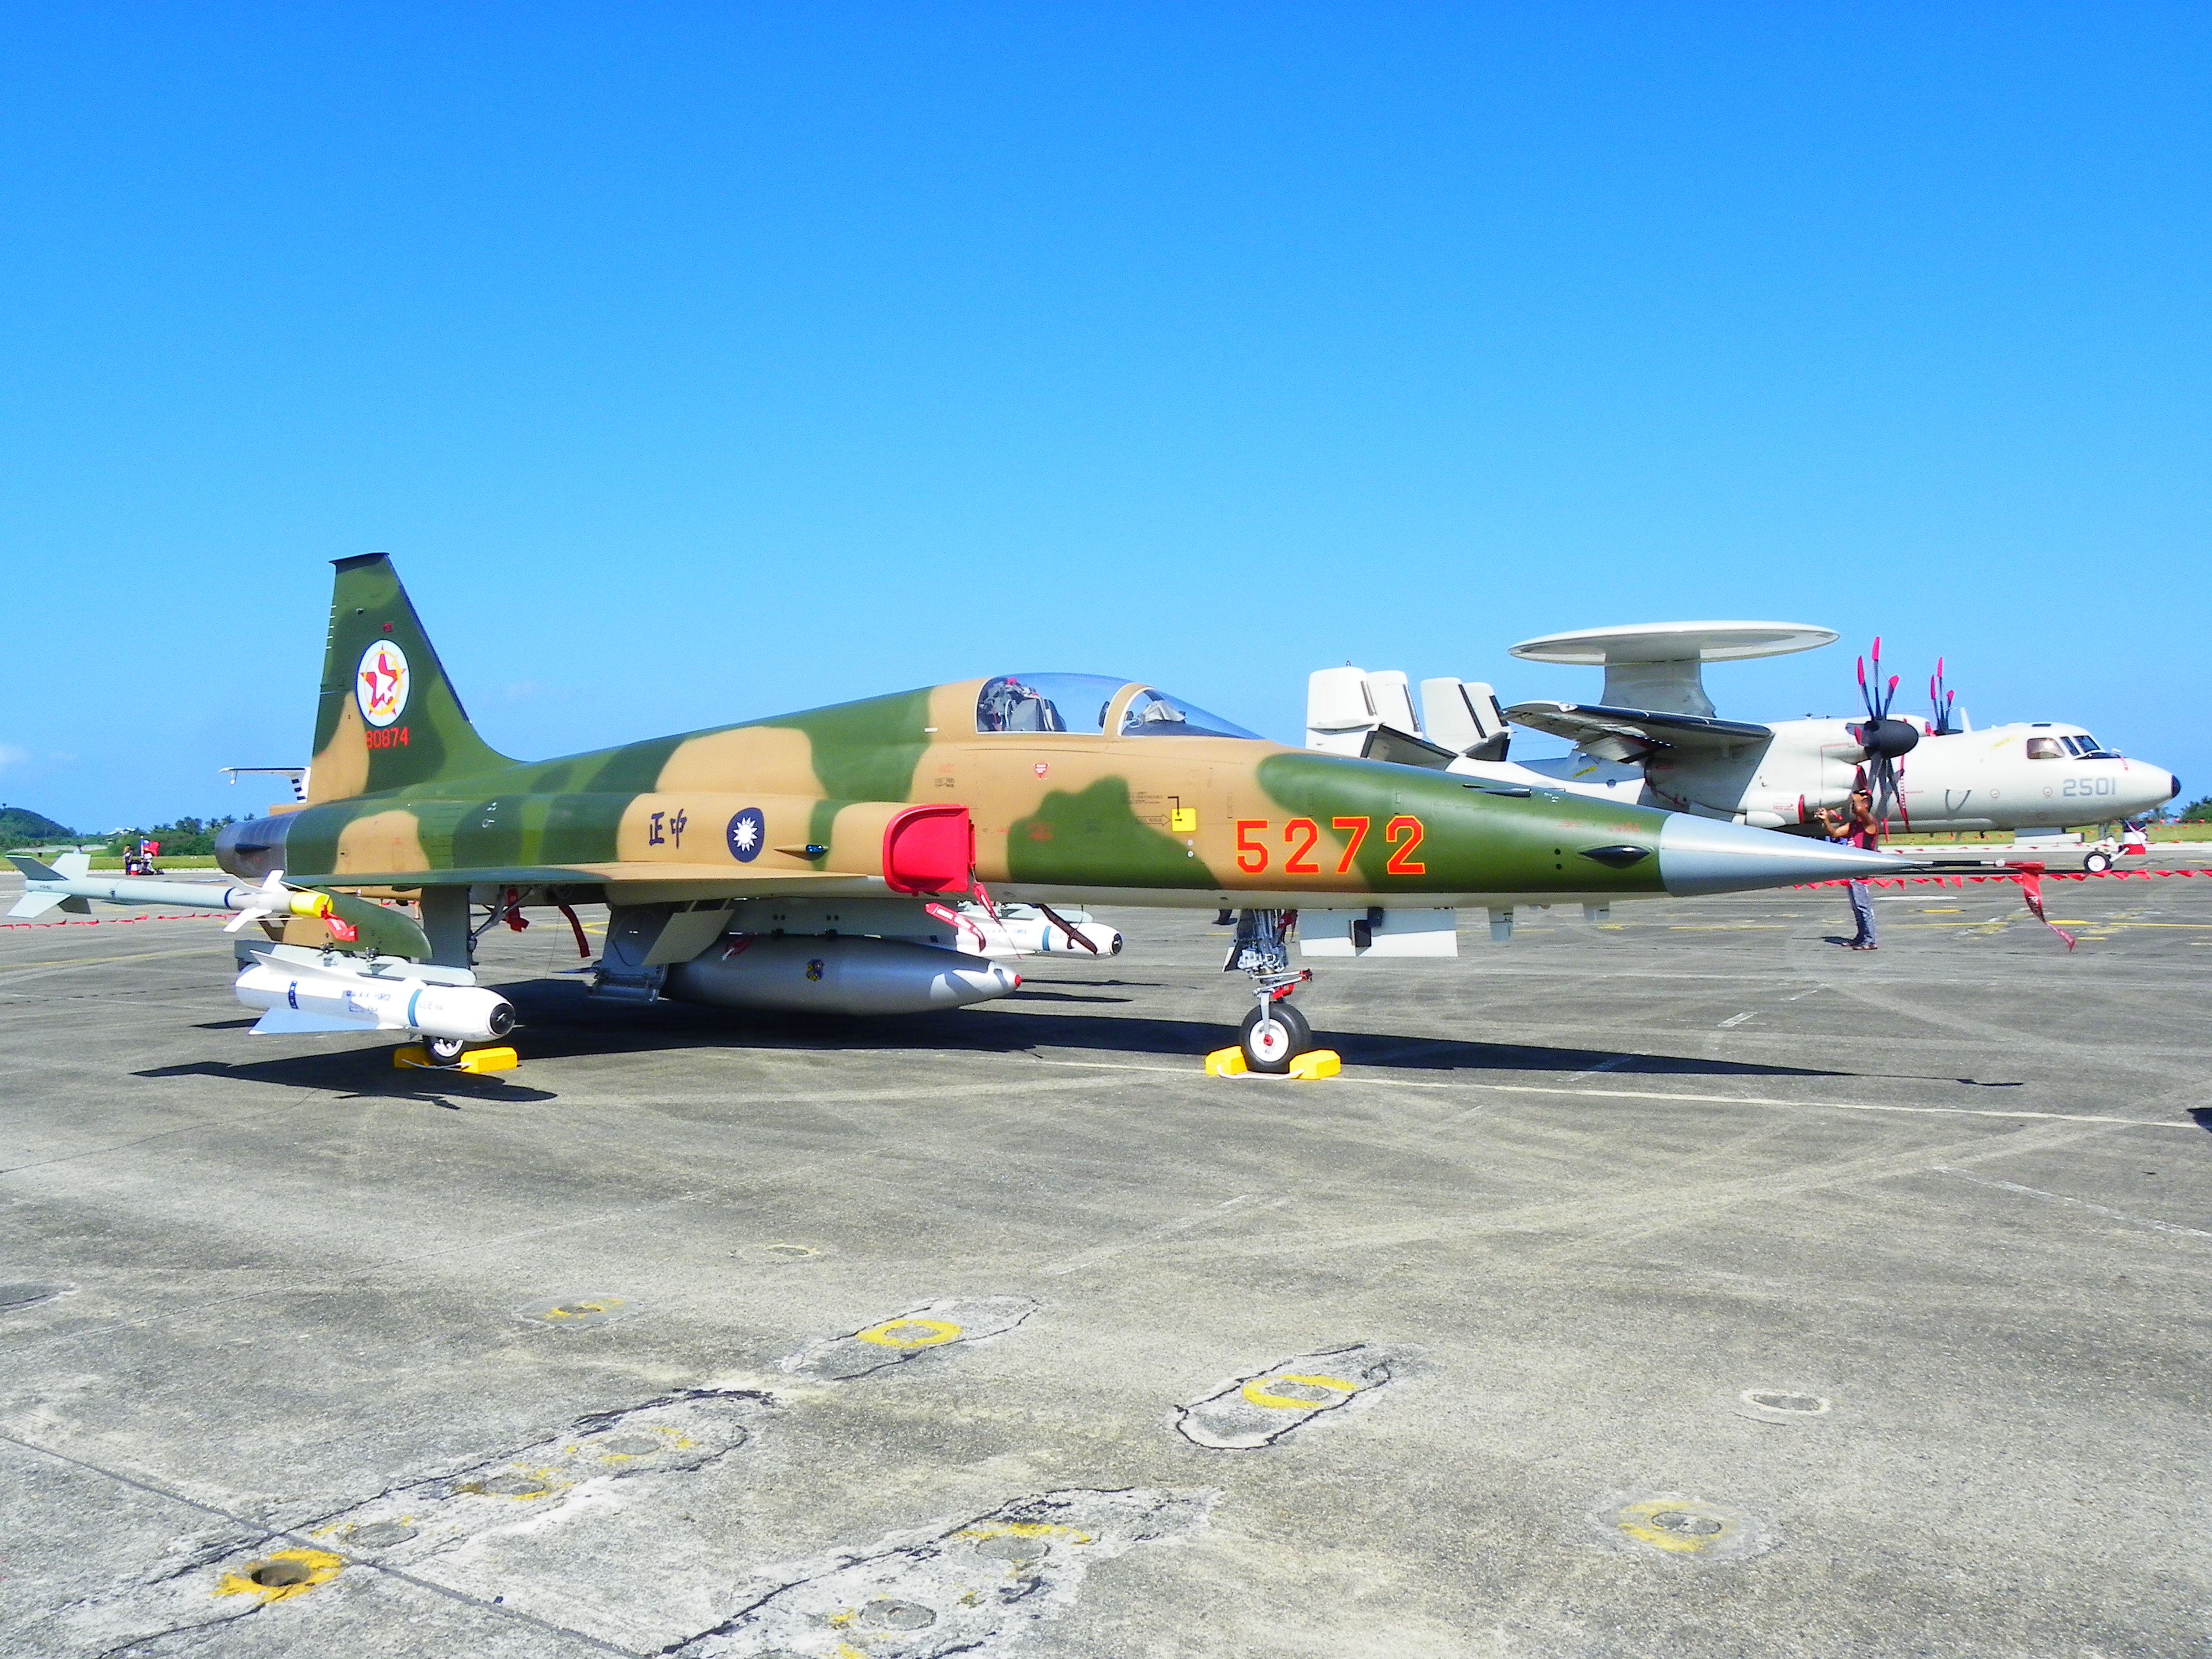 ROCAF_F-5E_5272_Display_at_Chih_Hang_Air_Force_Base_Apron_20130601a